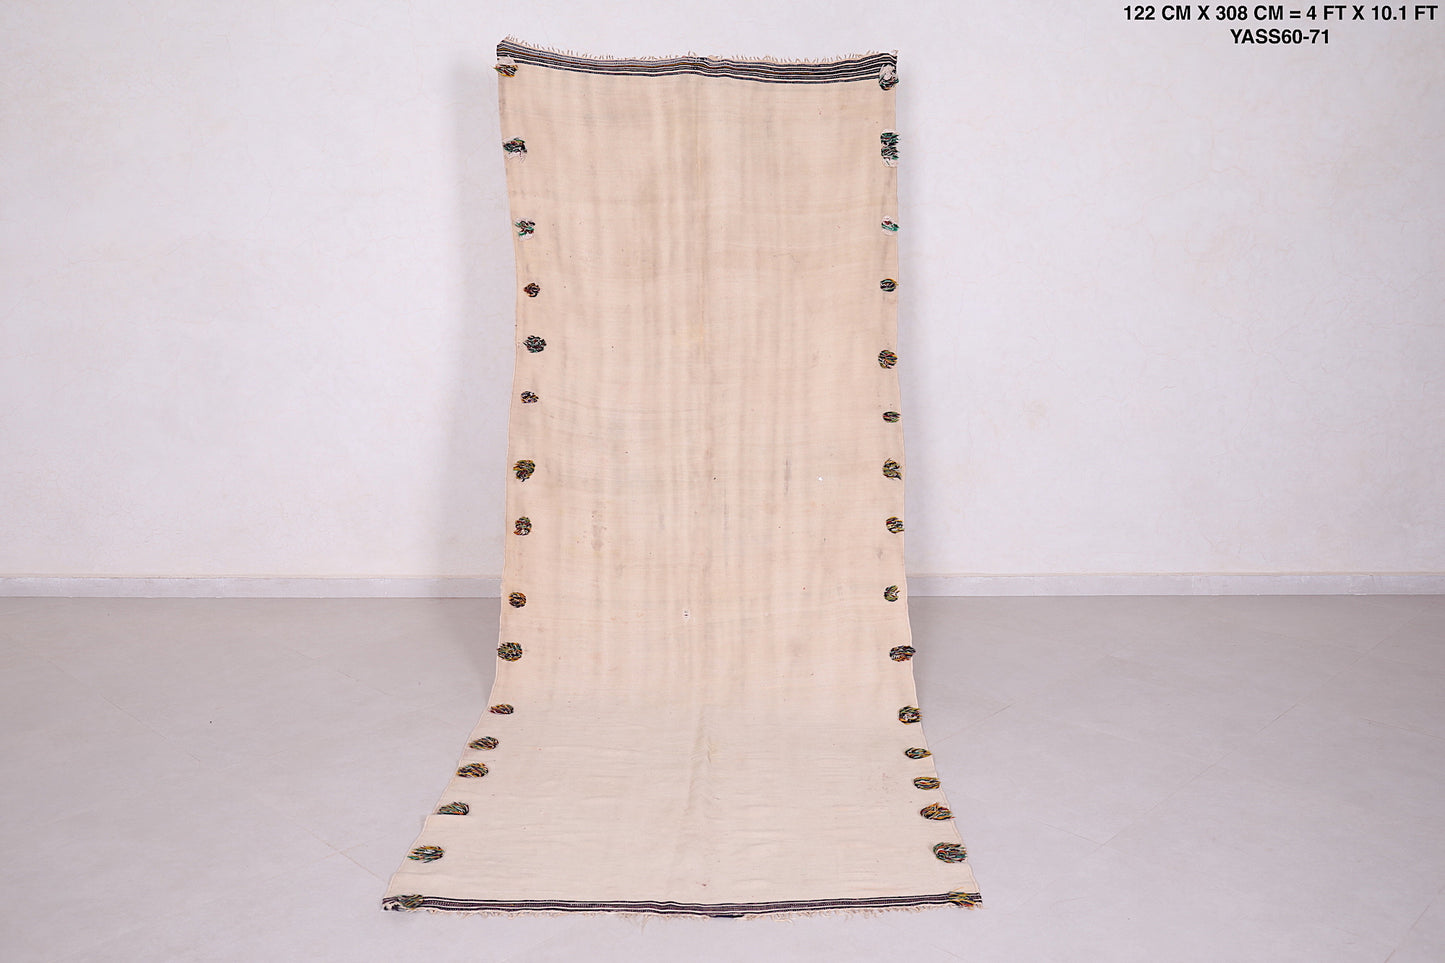 Moroccan berber handwoven kilim runner rug 4 FT X 10.1 FT